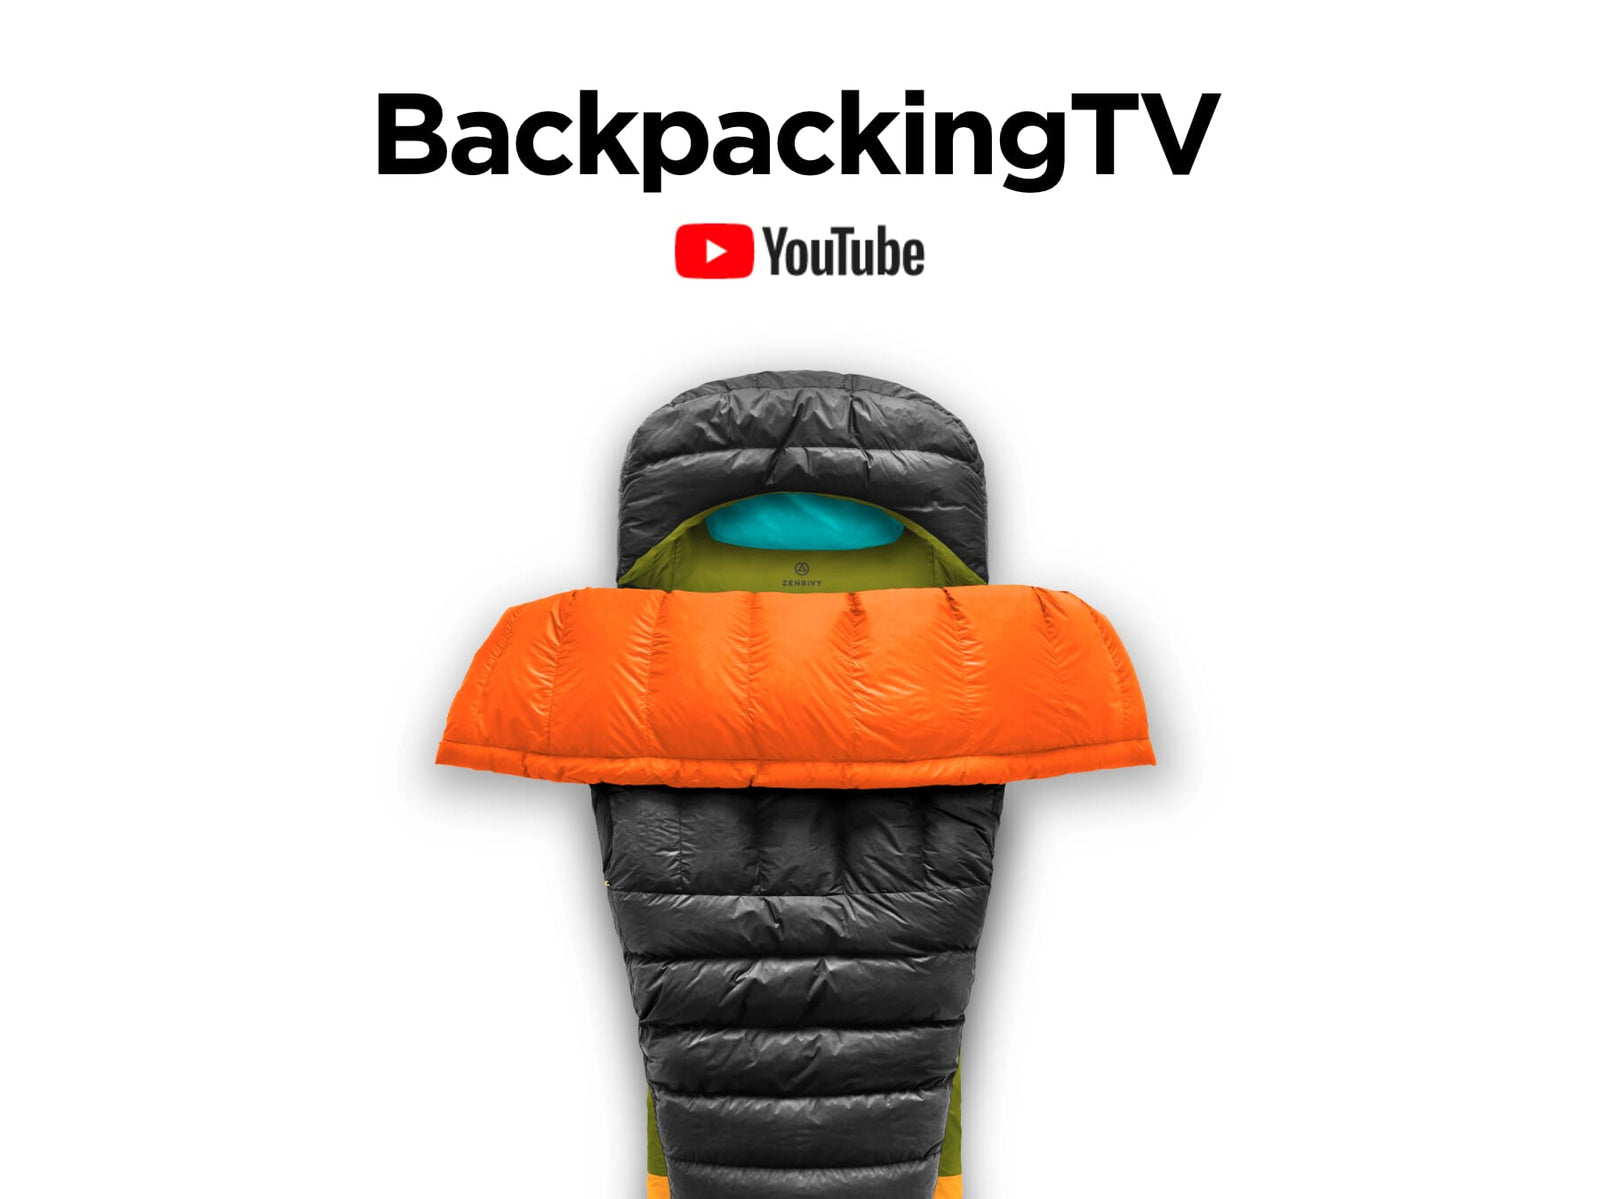 WATCH: BackpackingTV reviews the Zenbivy Light Bed